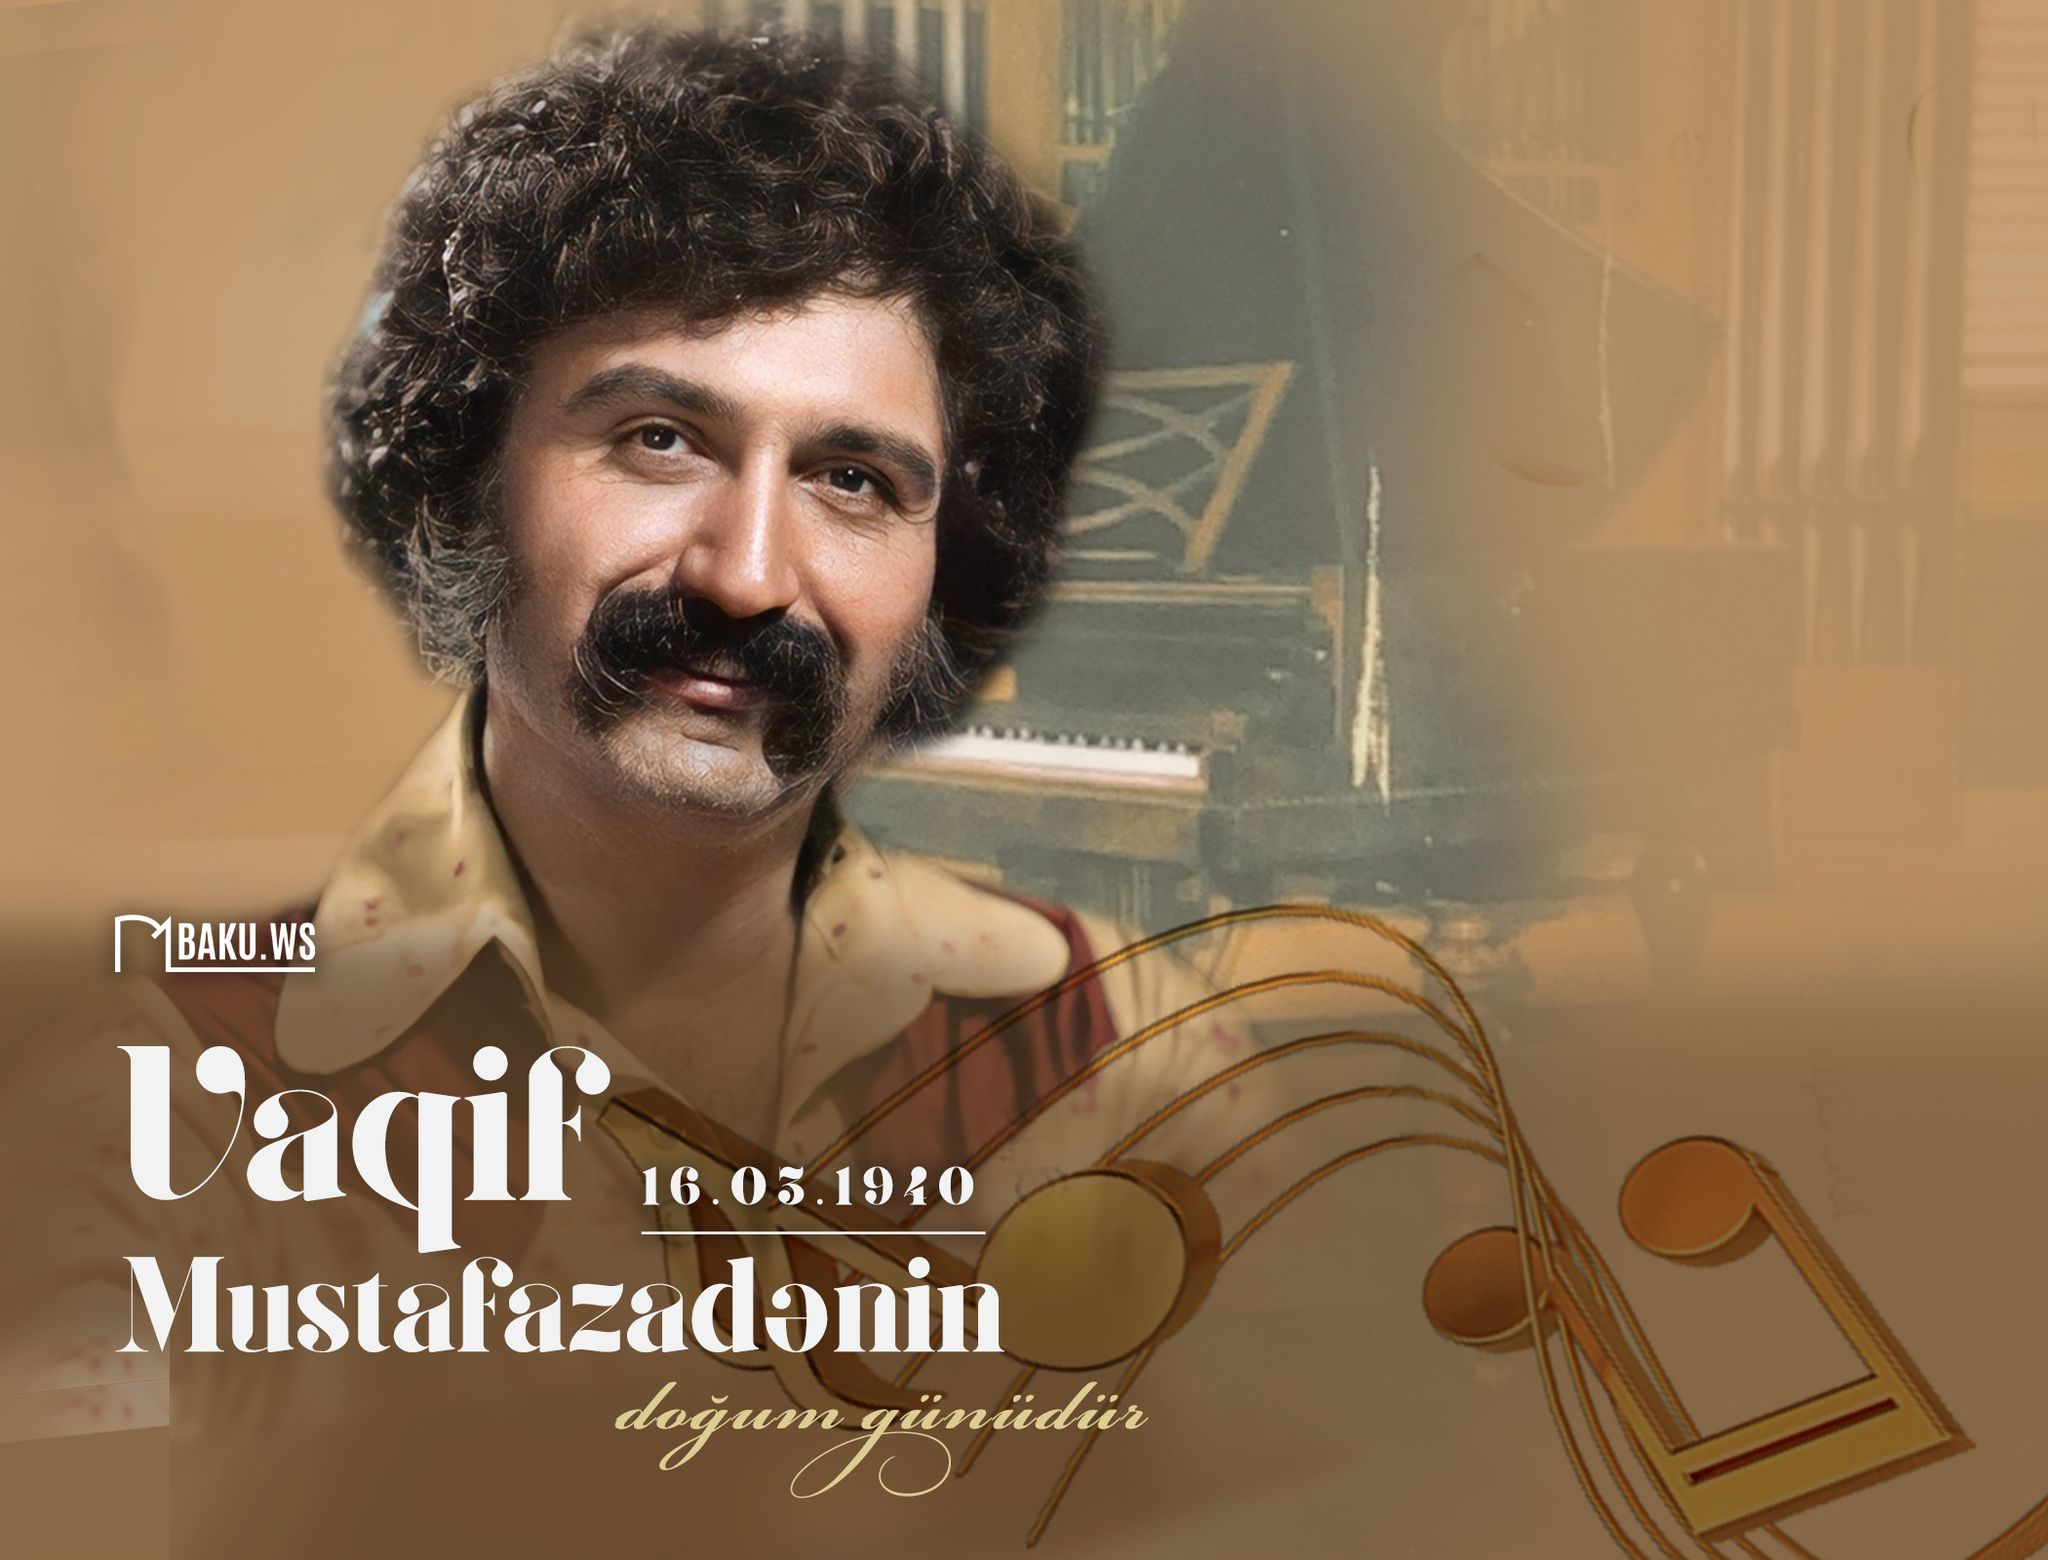 Azərbaycan cazının banisi Vaqif Mustafazadənin doğum günüdür